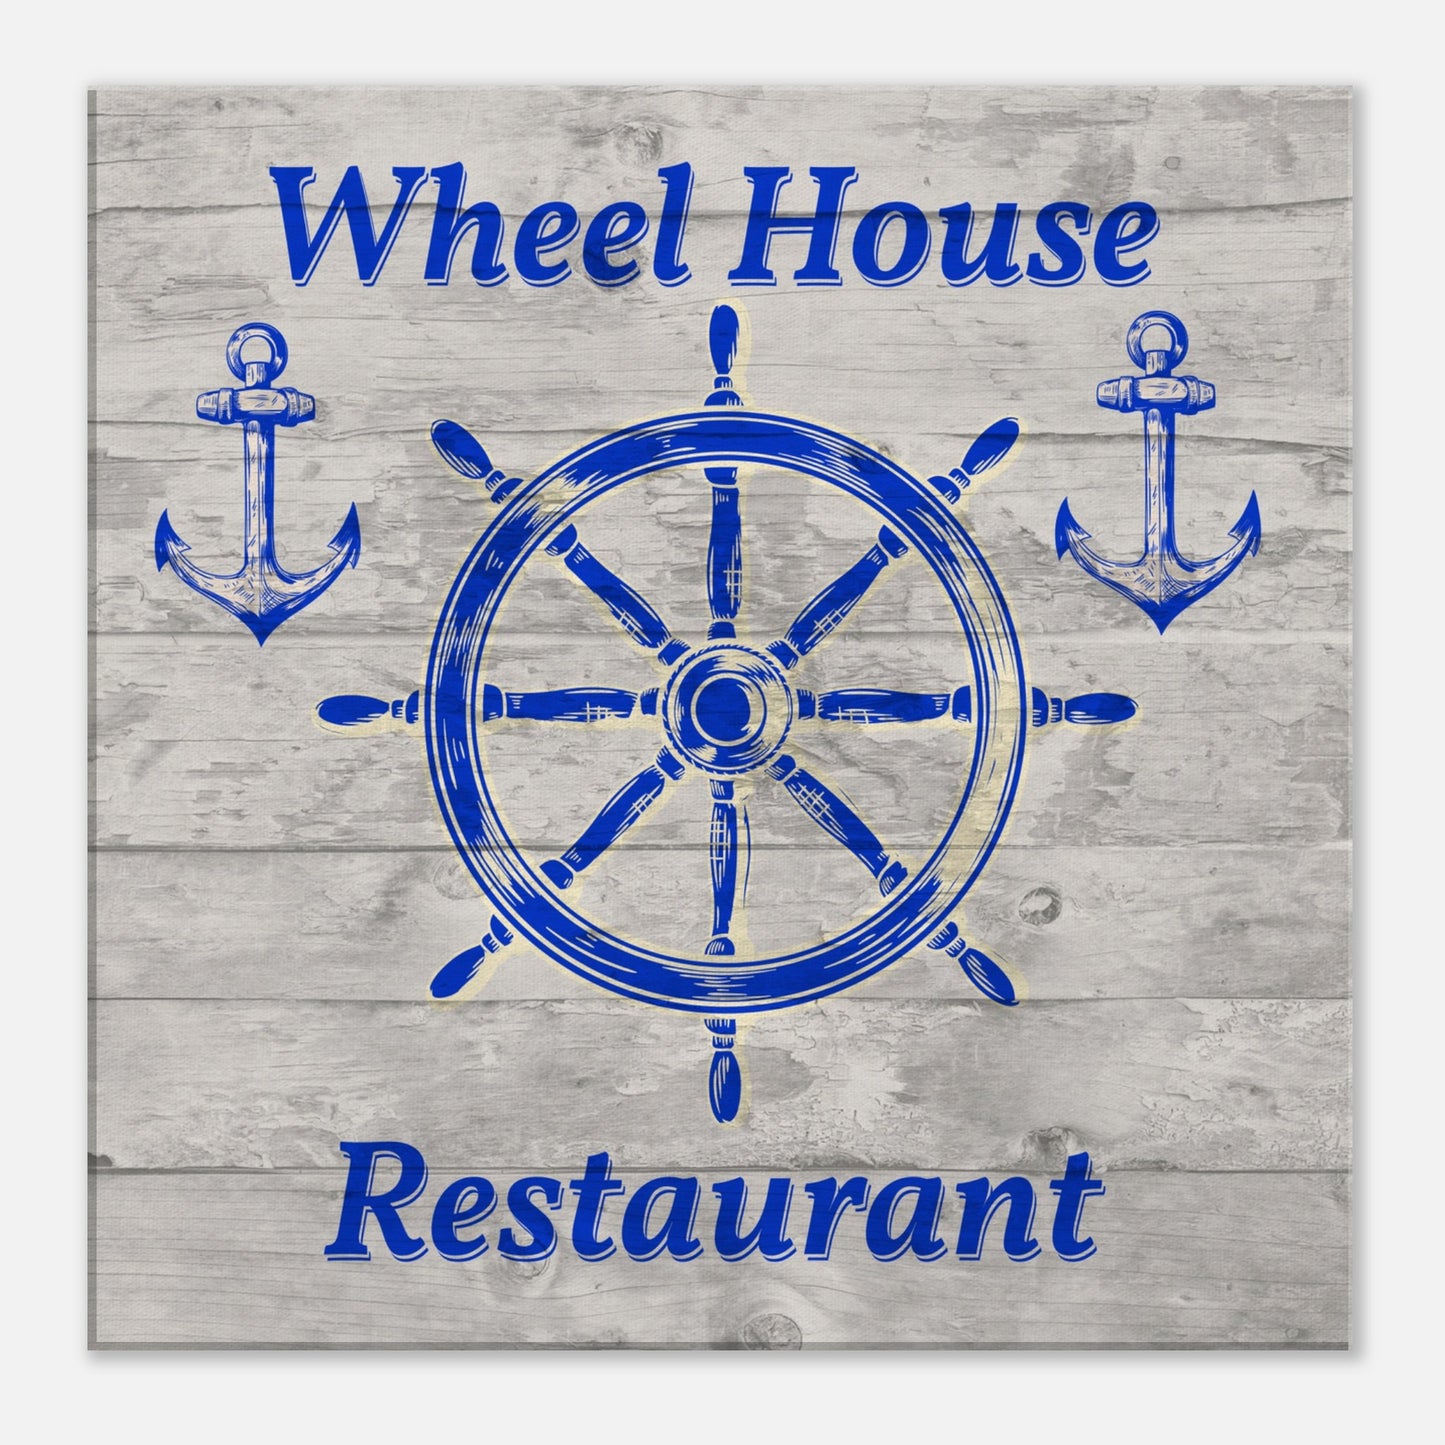 Wheelhouse Restaurant Canvas Wall Print by Caribbean Rays